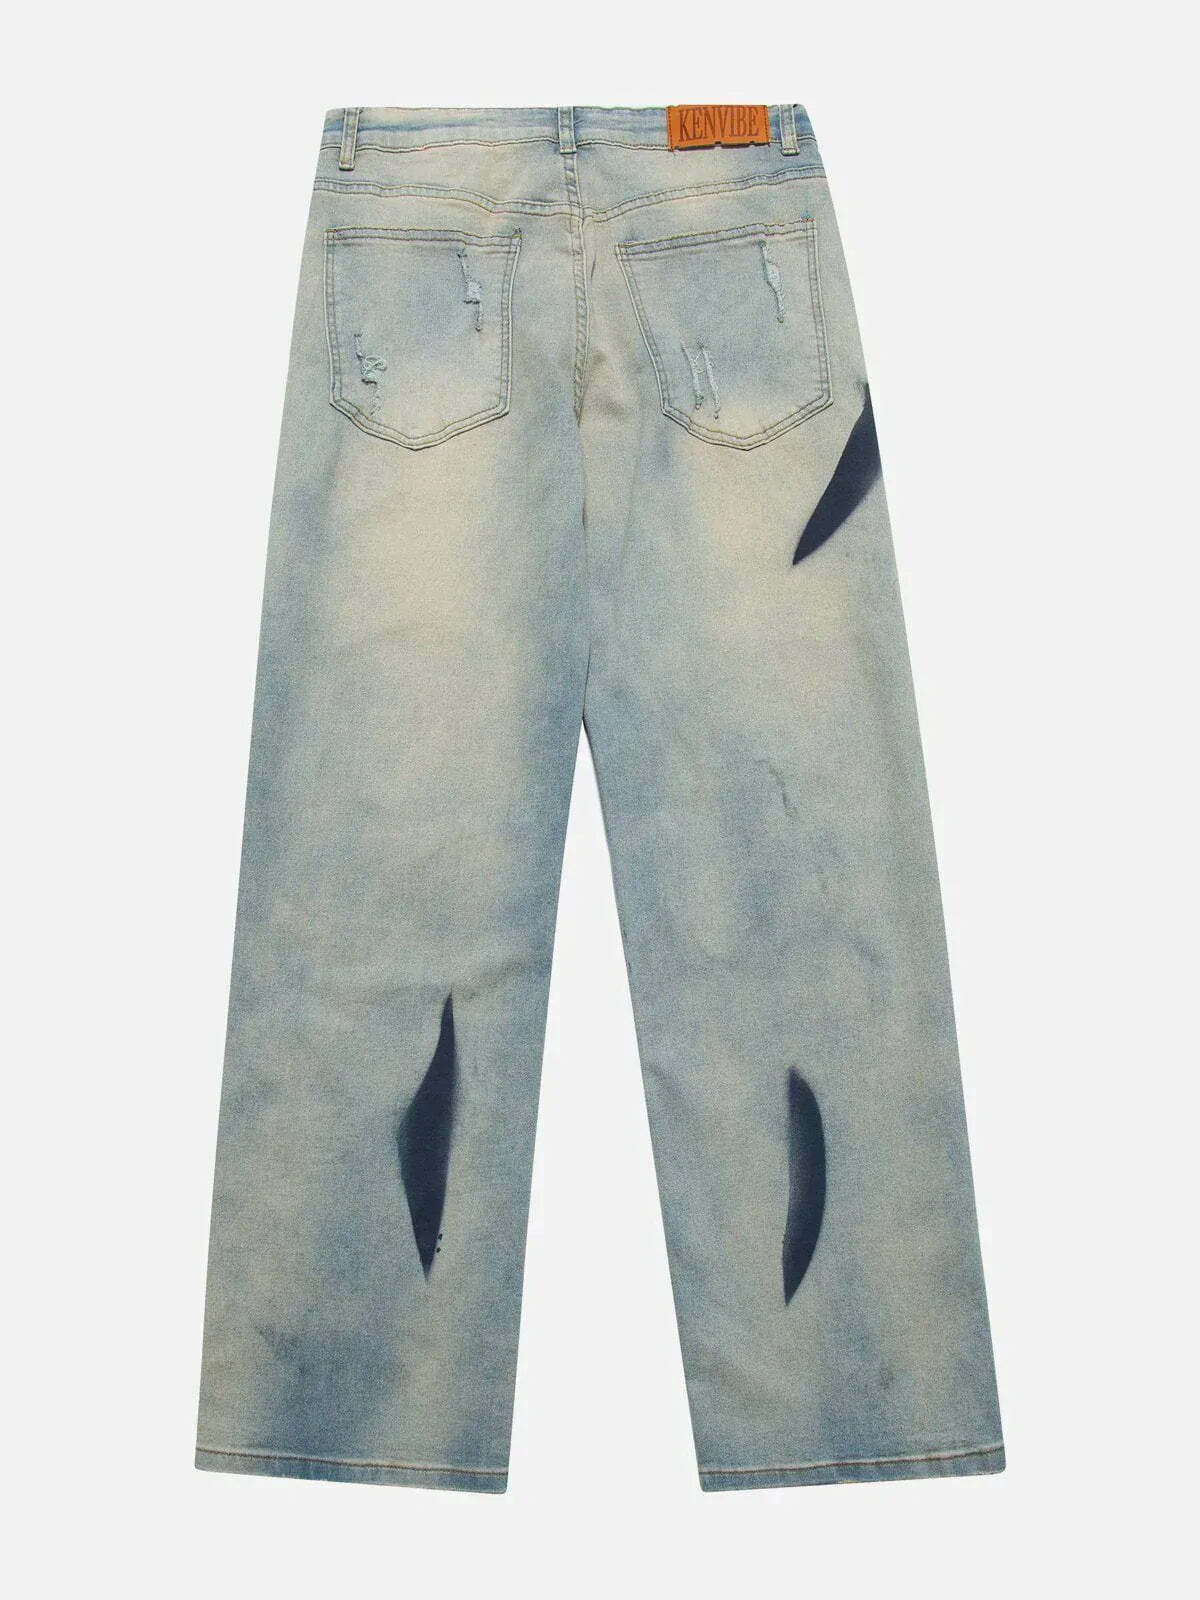 waterwashed hole jeans urban retro denim essential 6761